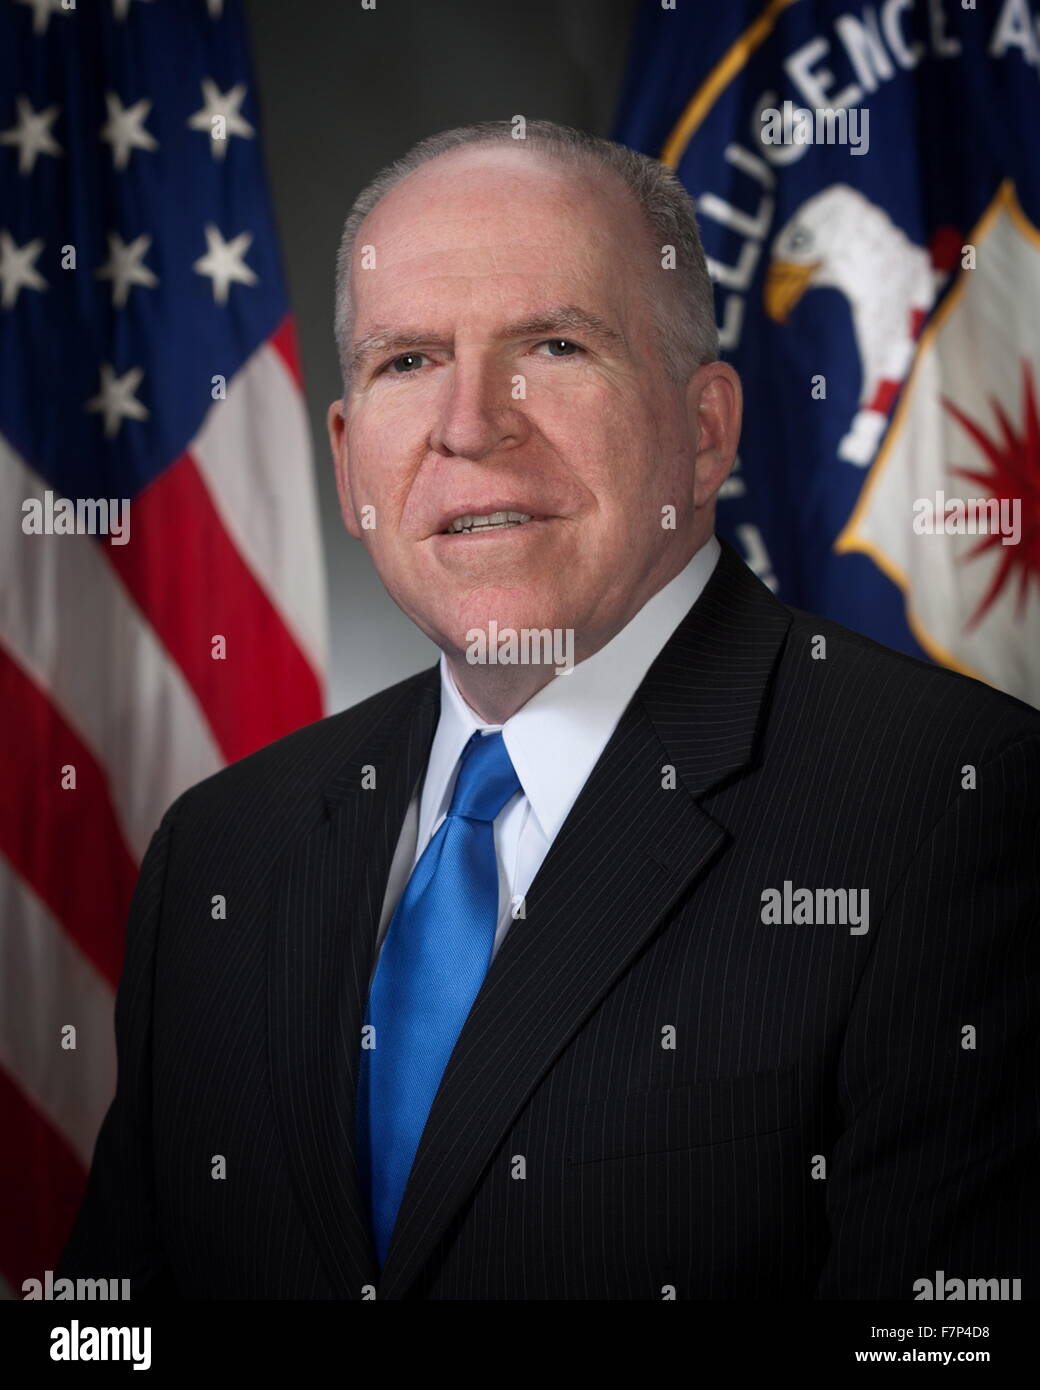 Photographie de John O. Brennan (1955-) un fonctionnaire du gouvernement et le directeur de l'Agence centrale de renseignement. Datée 2013 Banque D'Images